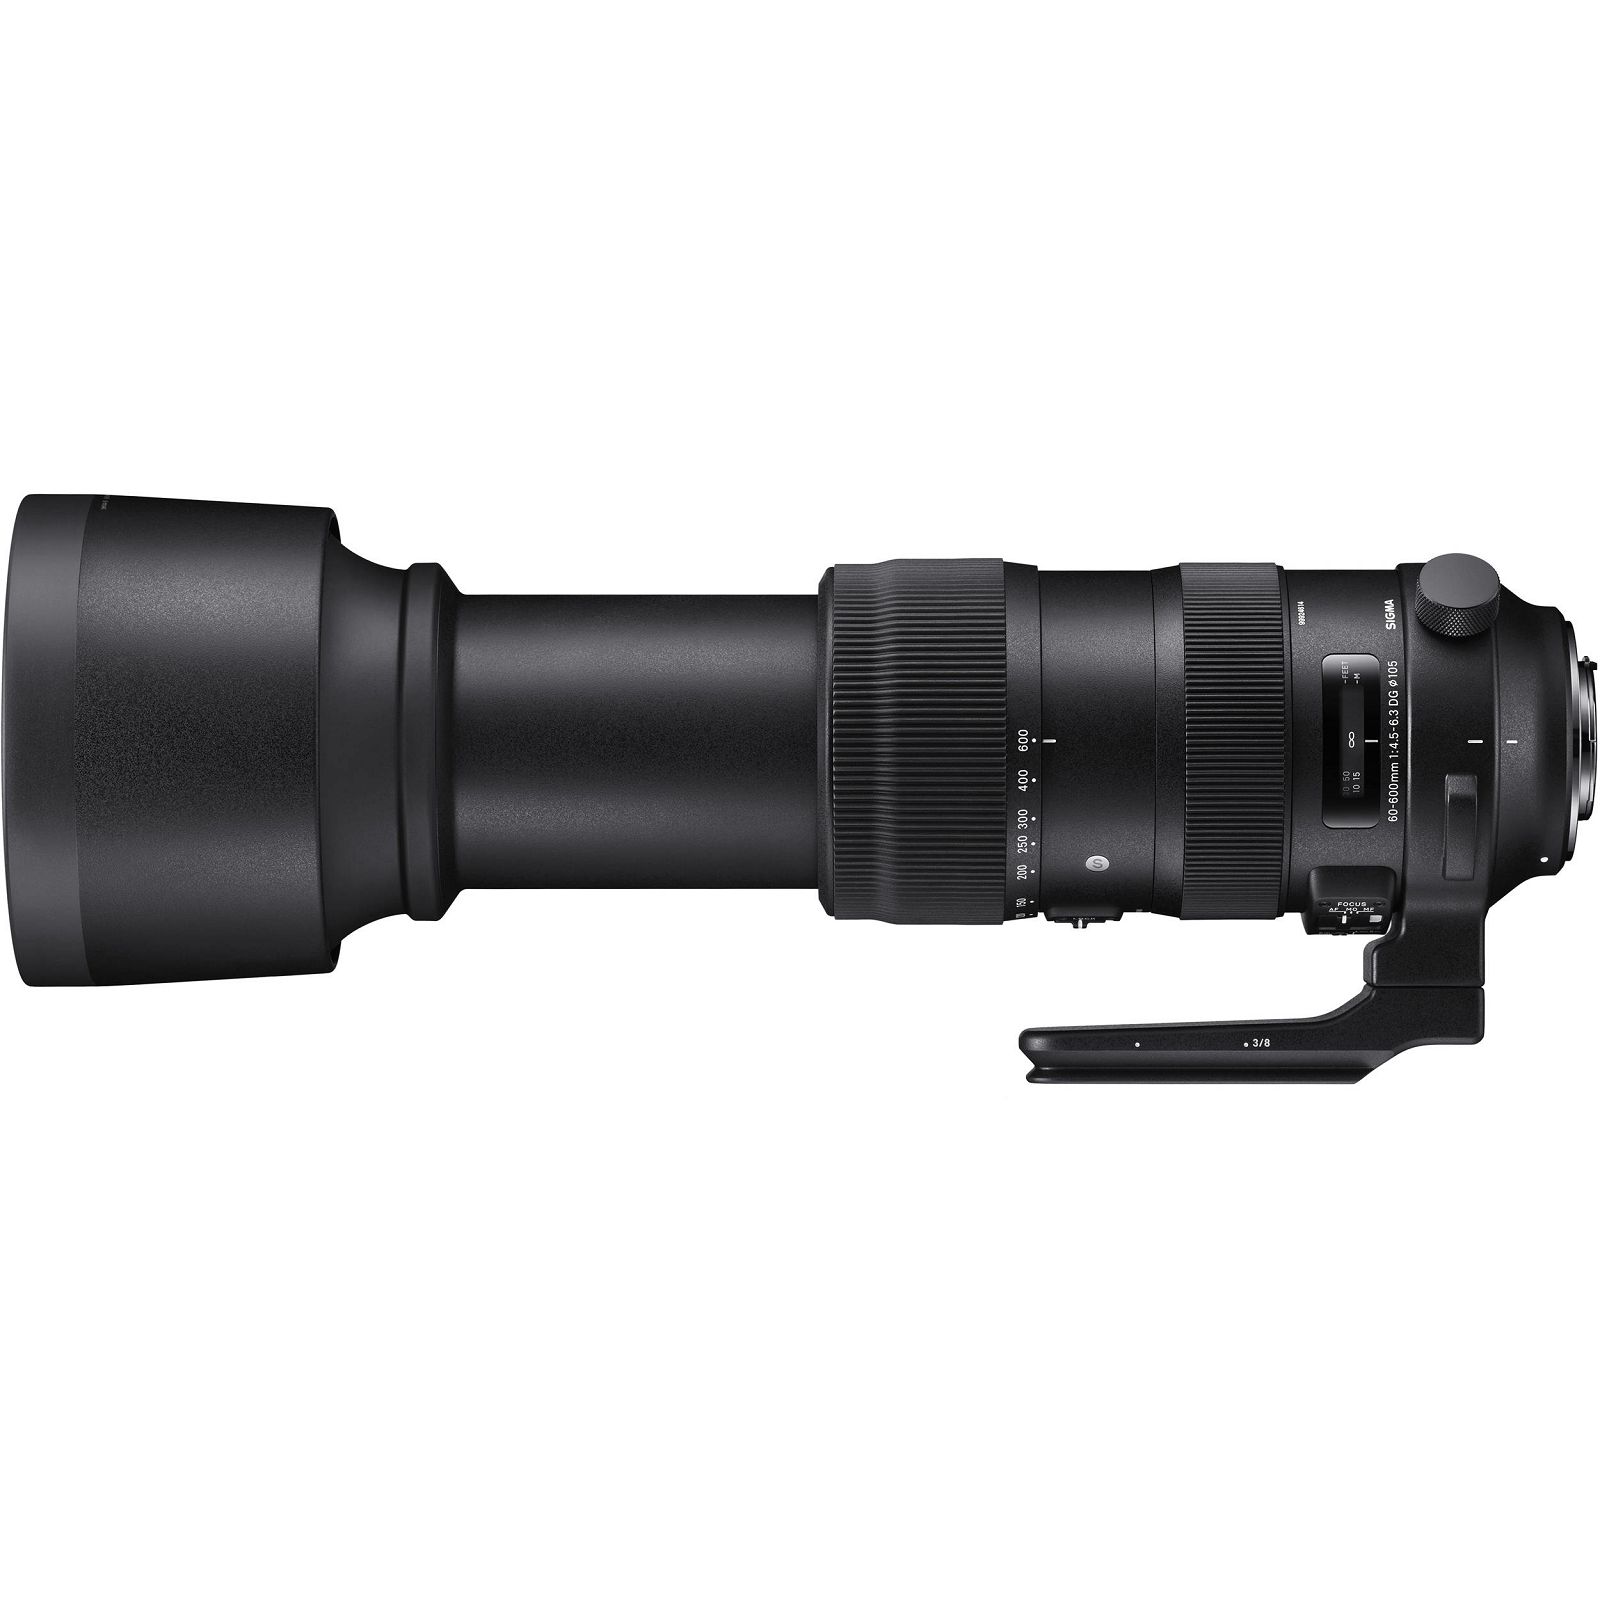 Sigma 60-600mm f/4.5-6.3 DG OS HSM Sport AF telefoto objektiv za Nikon FX (SI730-955)